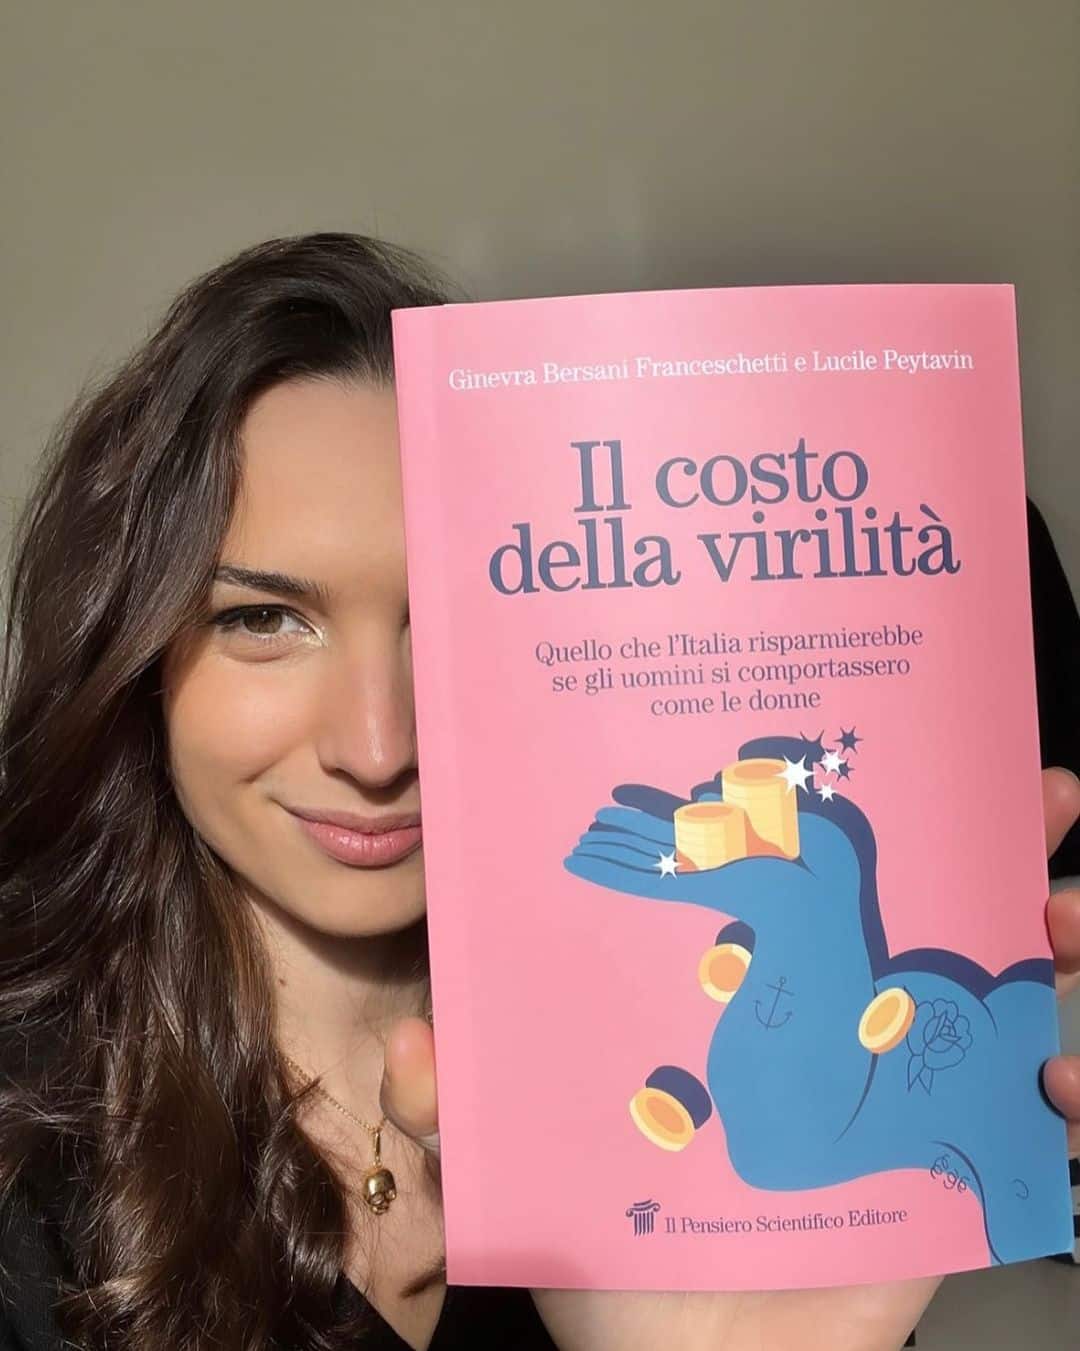 Ginevra Bersani Franceschetti con il suo "Il costo della virilità - quello che l'Italia risparmierebbe se gli uomini si comportassero come le donne" (Instagram)